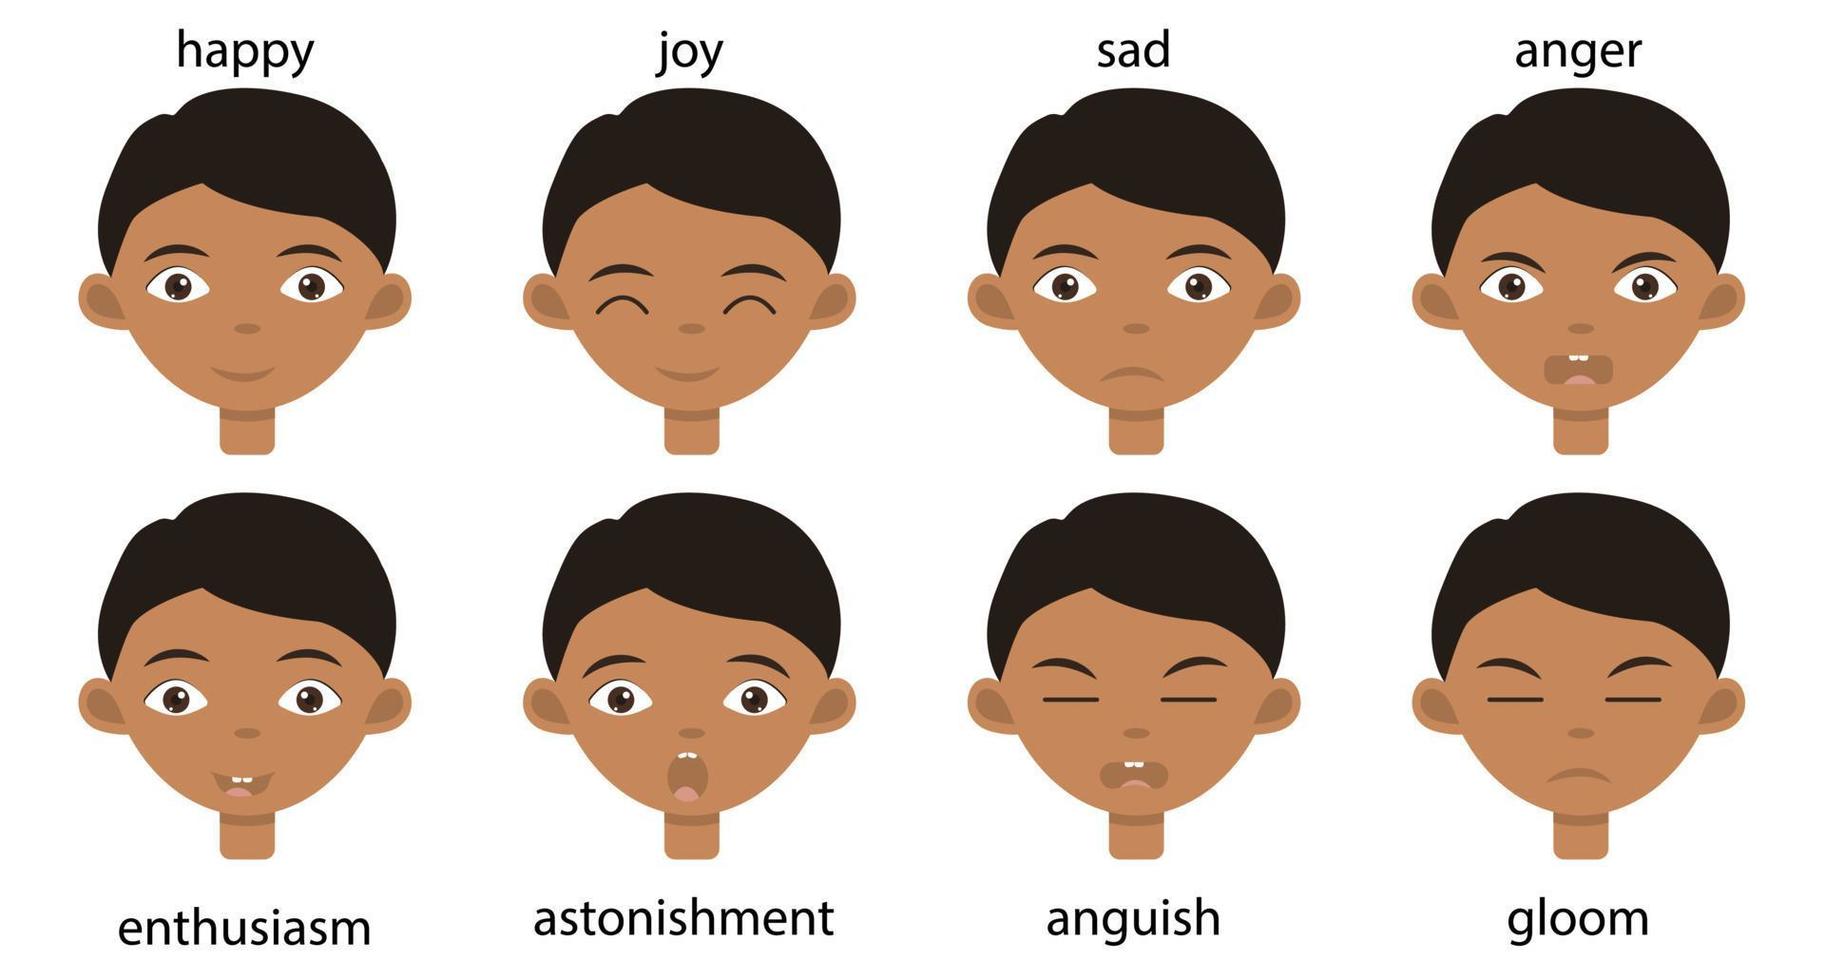 colección de diferentes emociones felices y tristes en la cara de un niño indio para avatar o pegatinas. retrato de niño lindo con ojos marrones. vector